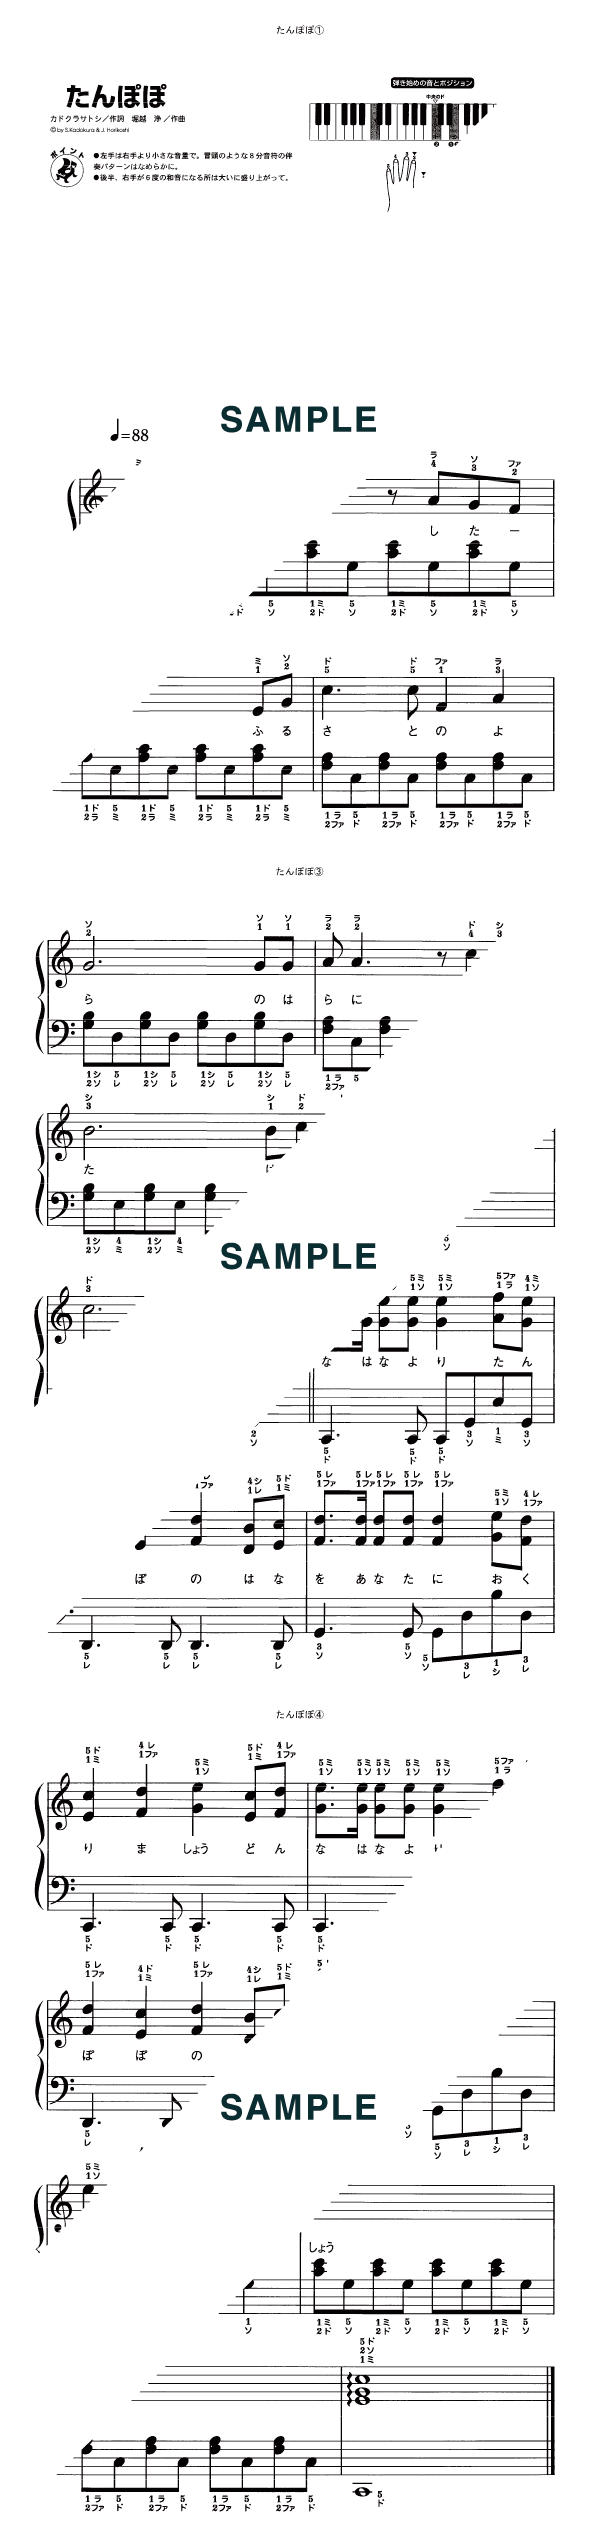 楽譜 たんぽぽ ピアノ ソロ譜 超初級 提供 Kmp 楽譜 Elise